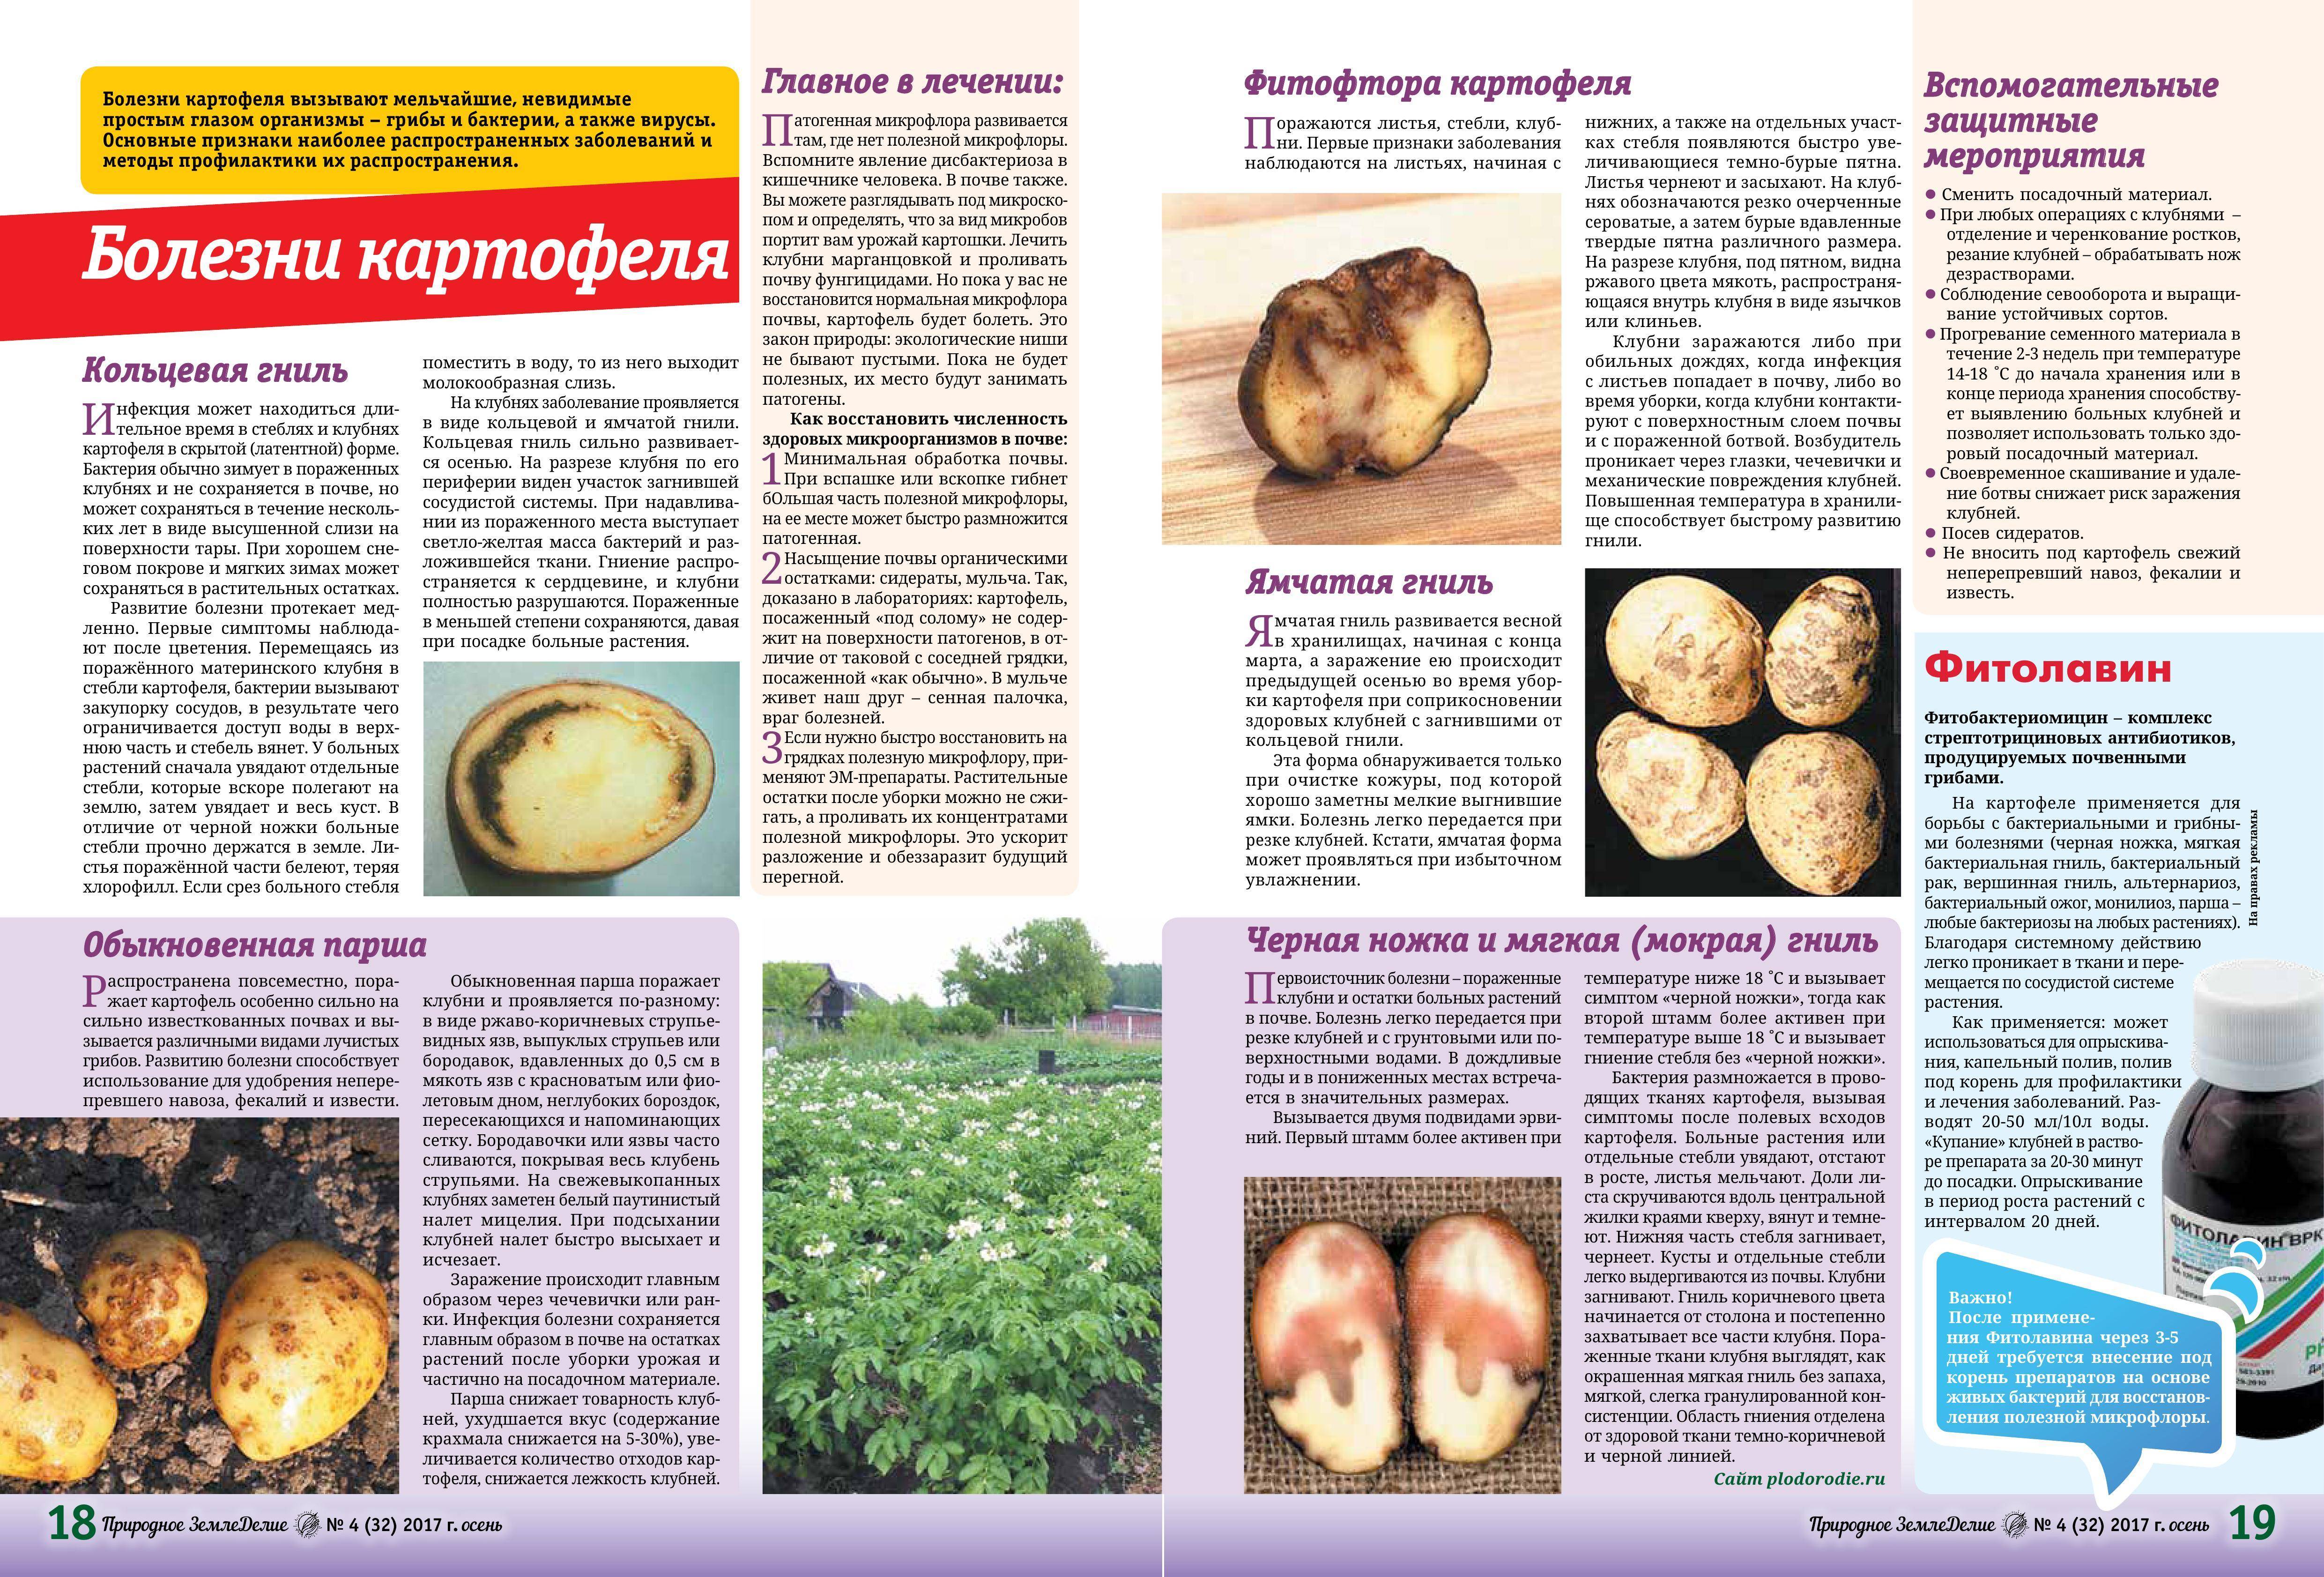 Вредители и болезни клубней картофеля: фото, описание и лечение